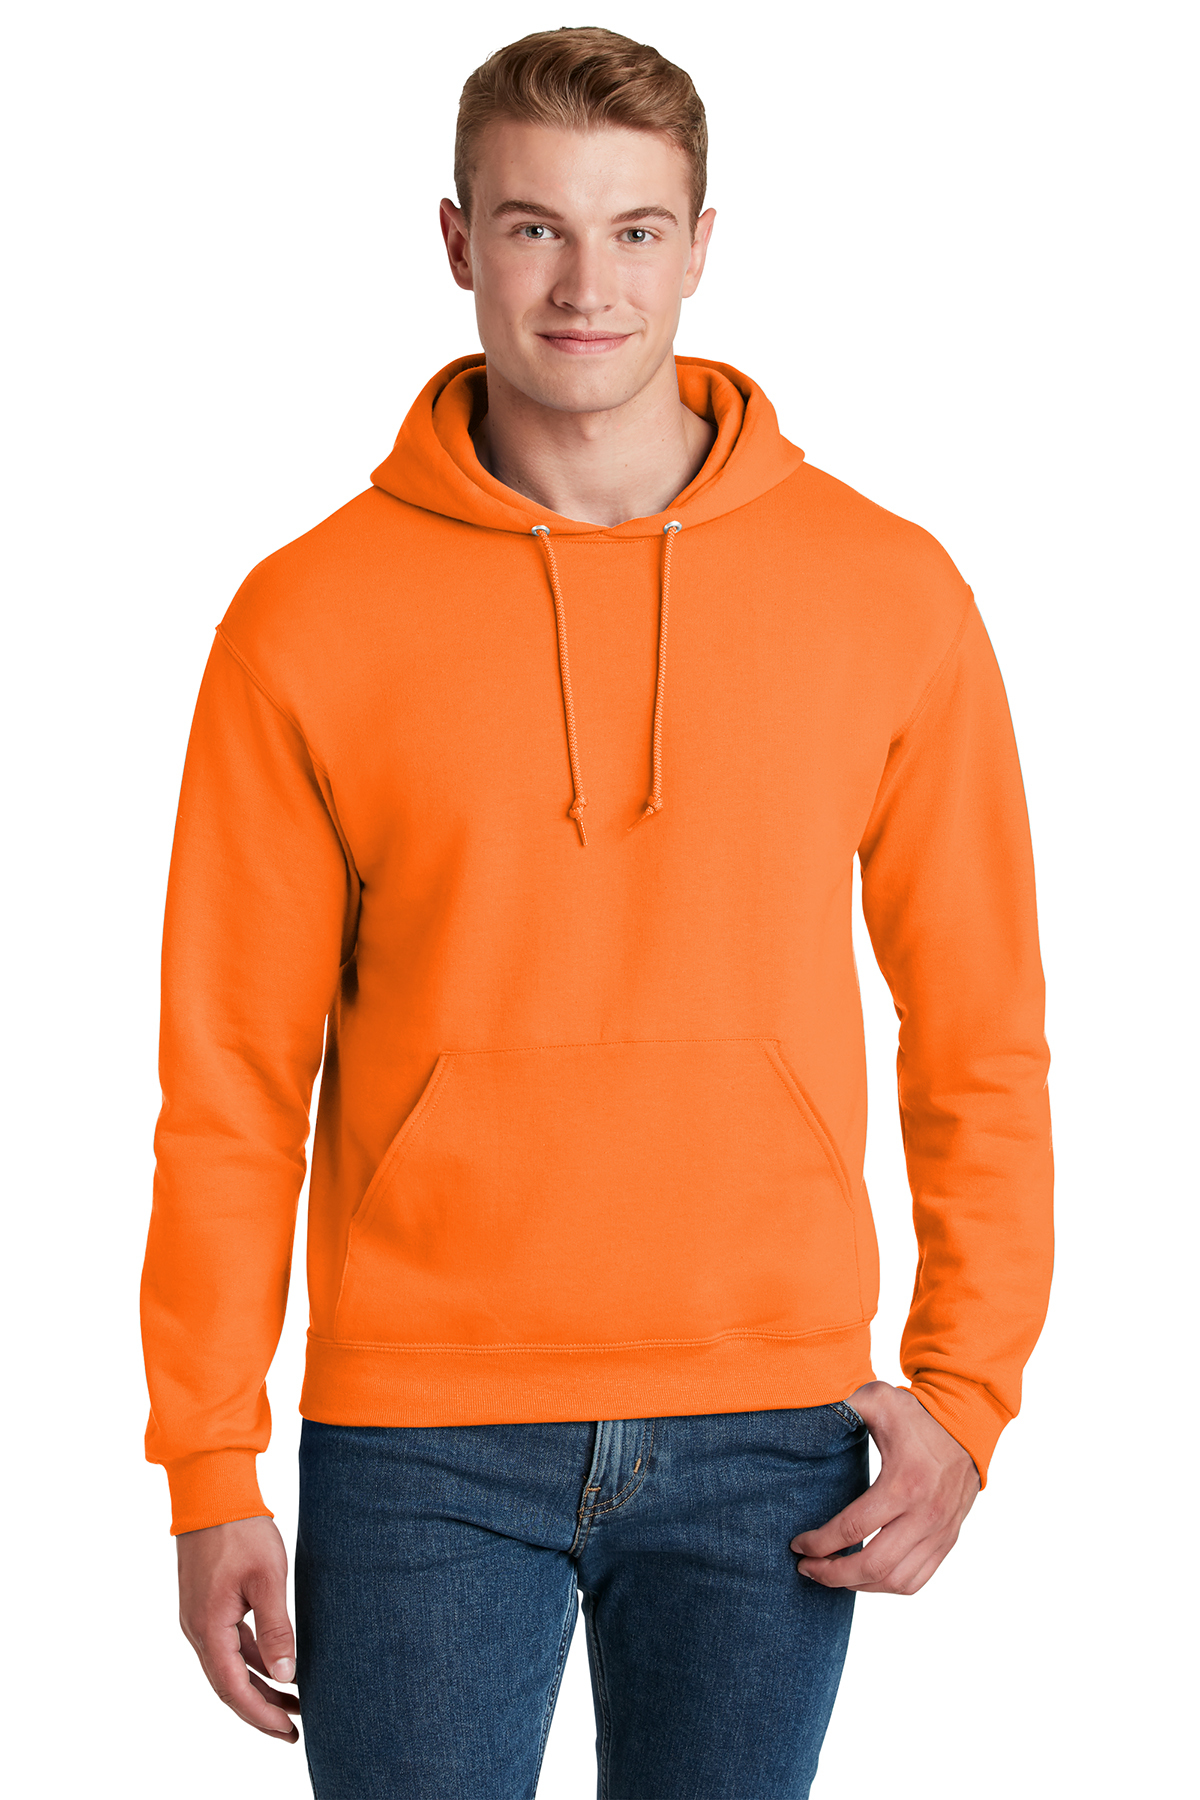 Jerzees - NuBlend Pullover Hooded Sweatshirt | Product | SanMar